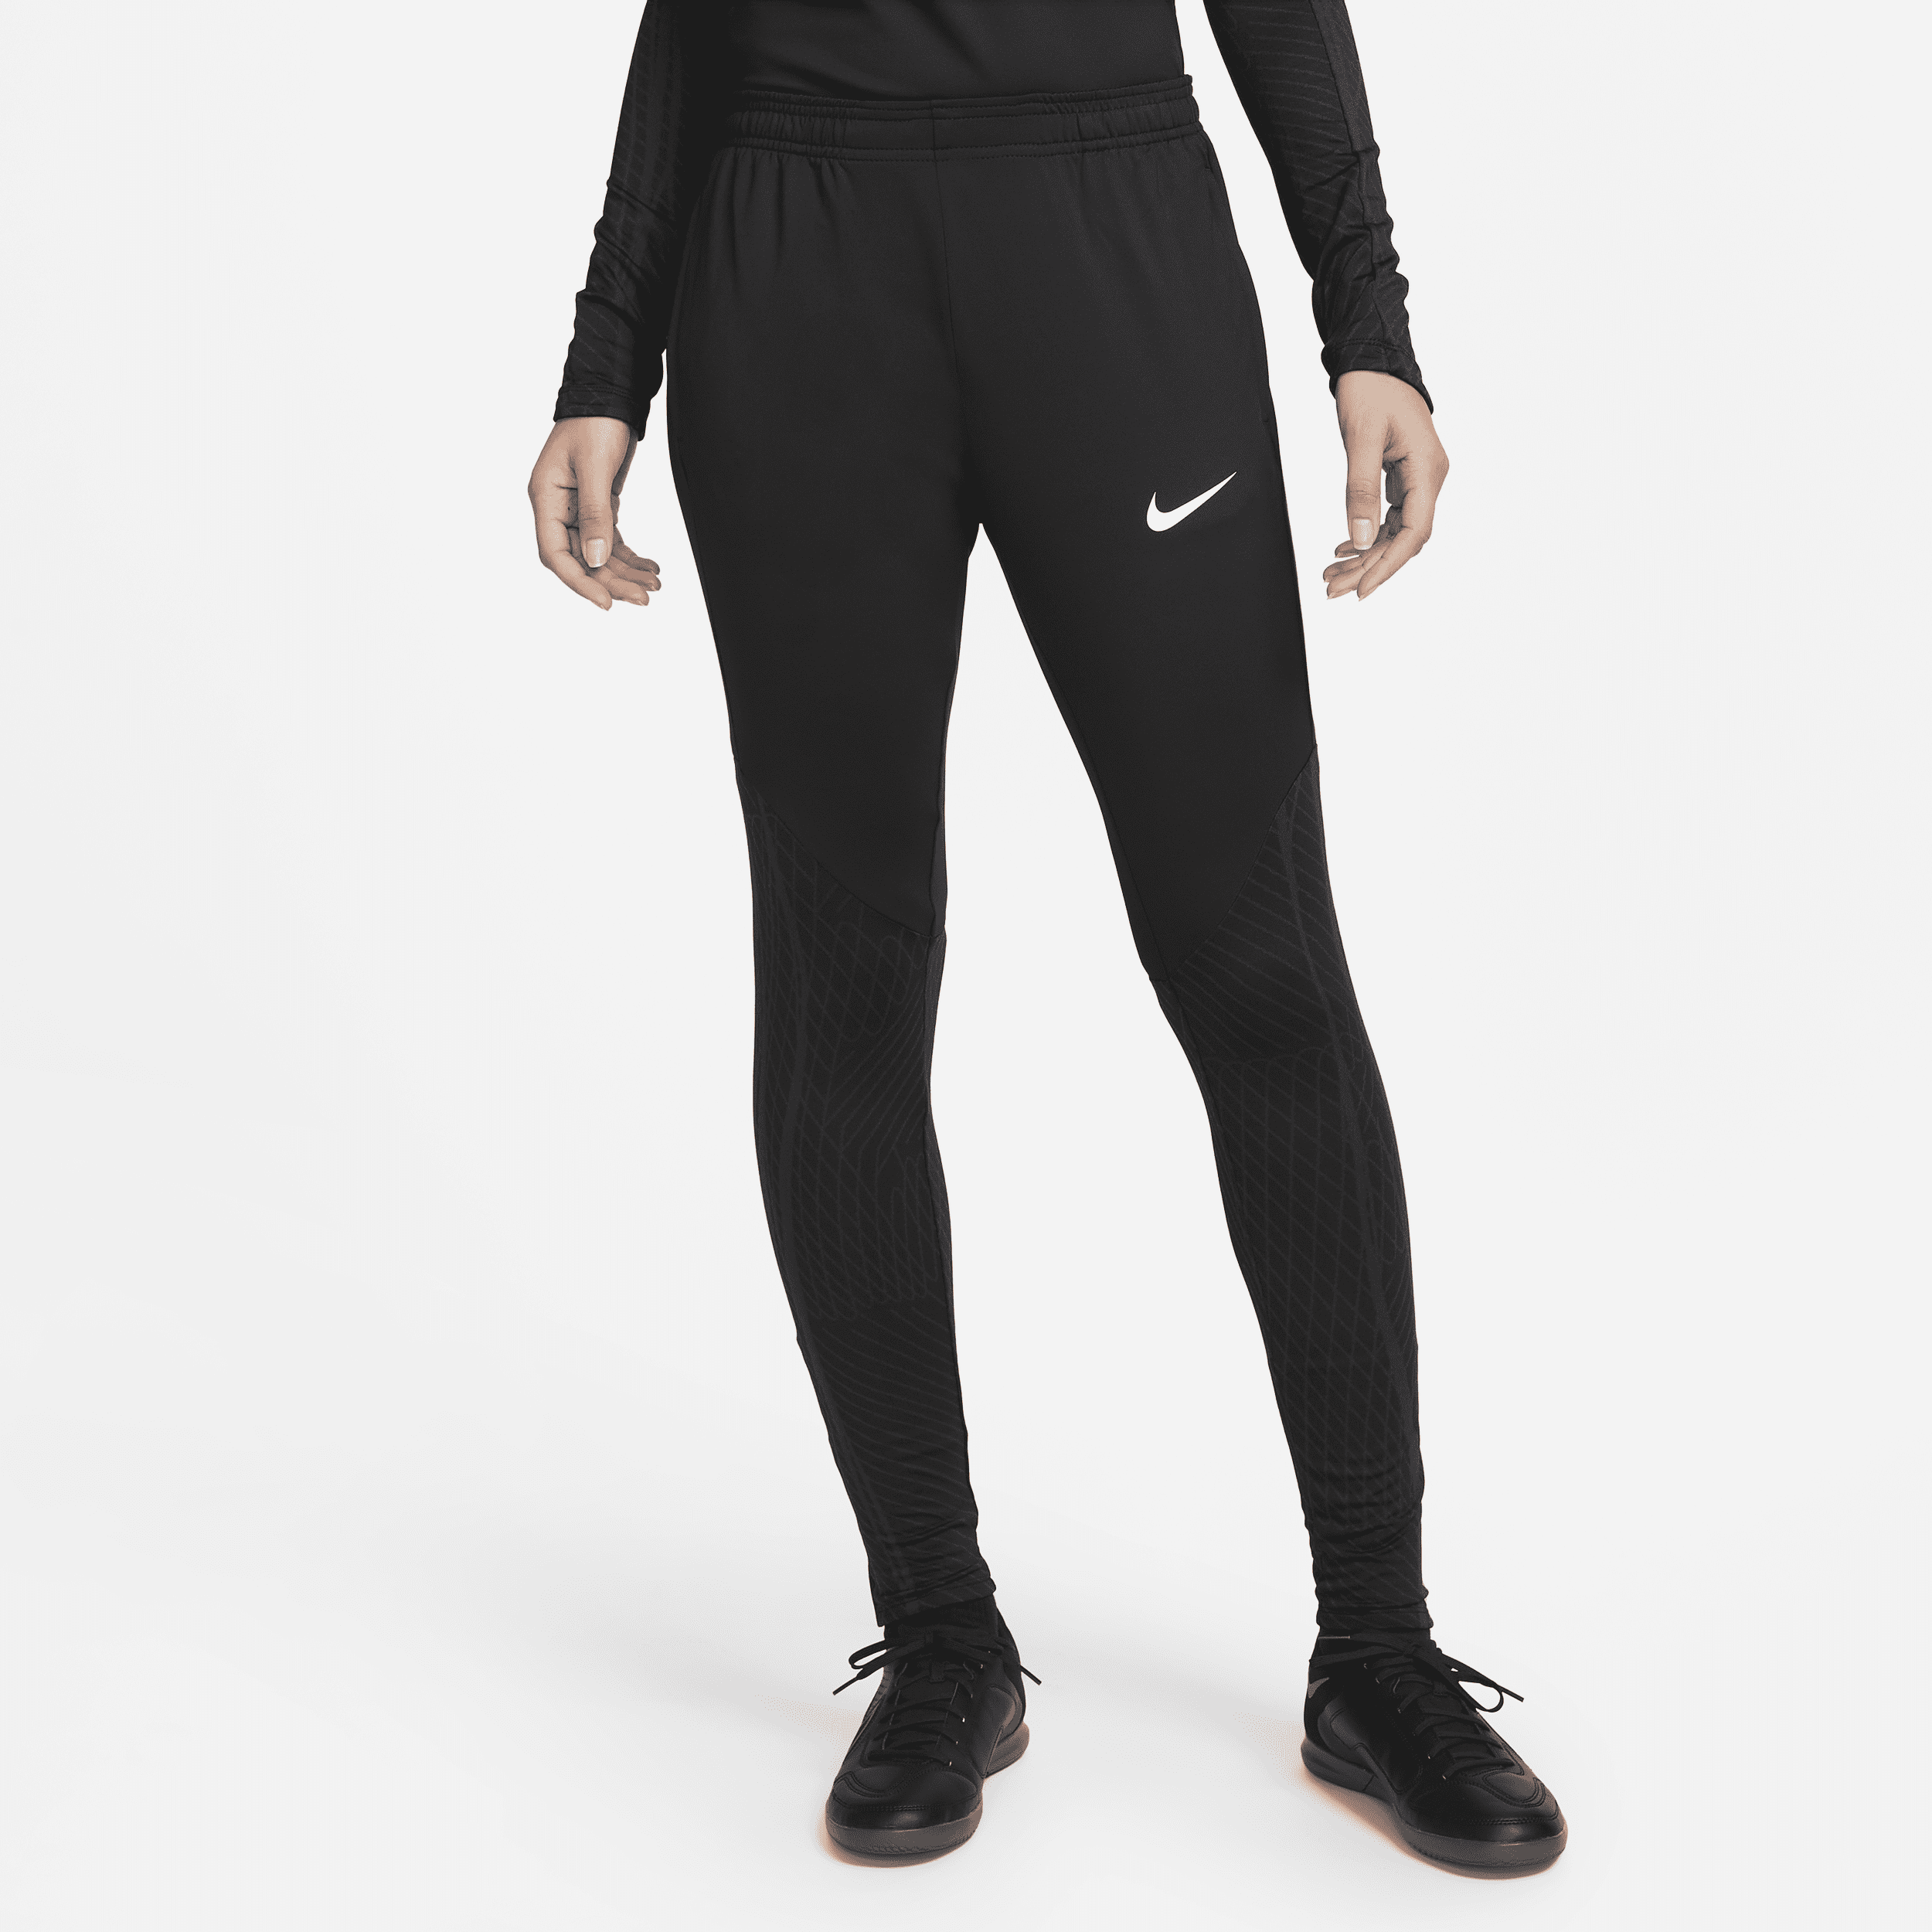 Nike Women's Dri-fit Strike Soccer Pants In Black